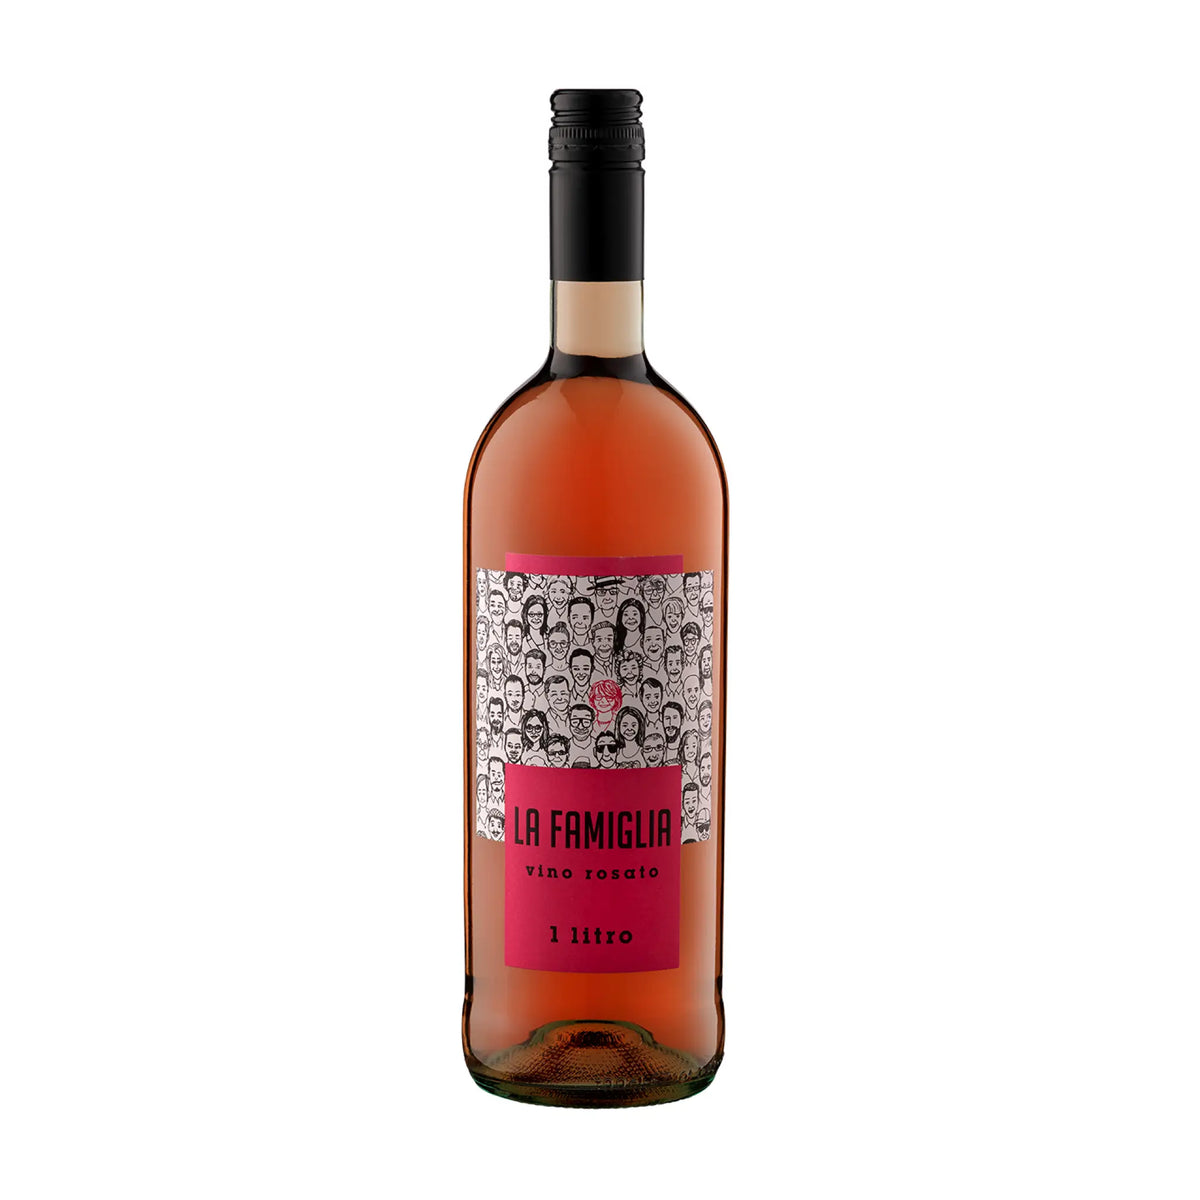 LA FAMIGLIA-Rosé-Rosé-Italien-Venetien-Vino Rosato "La Famiglia" - 1 Liter-WINECOM